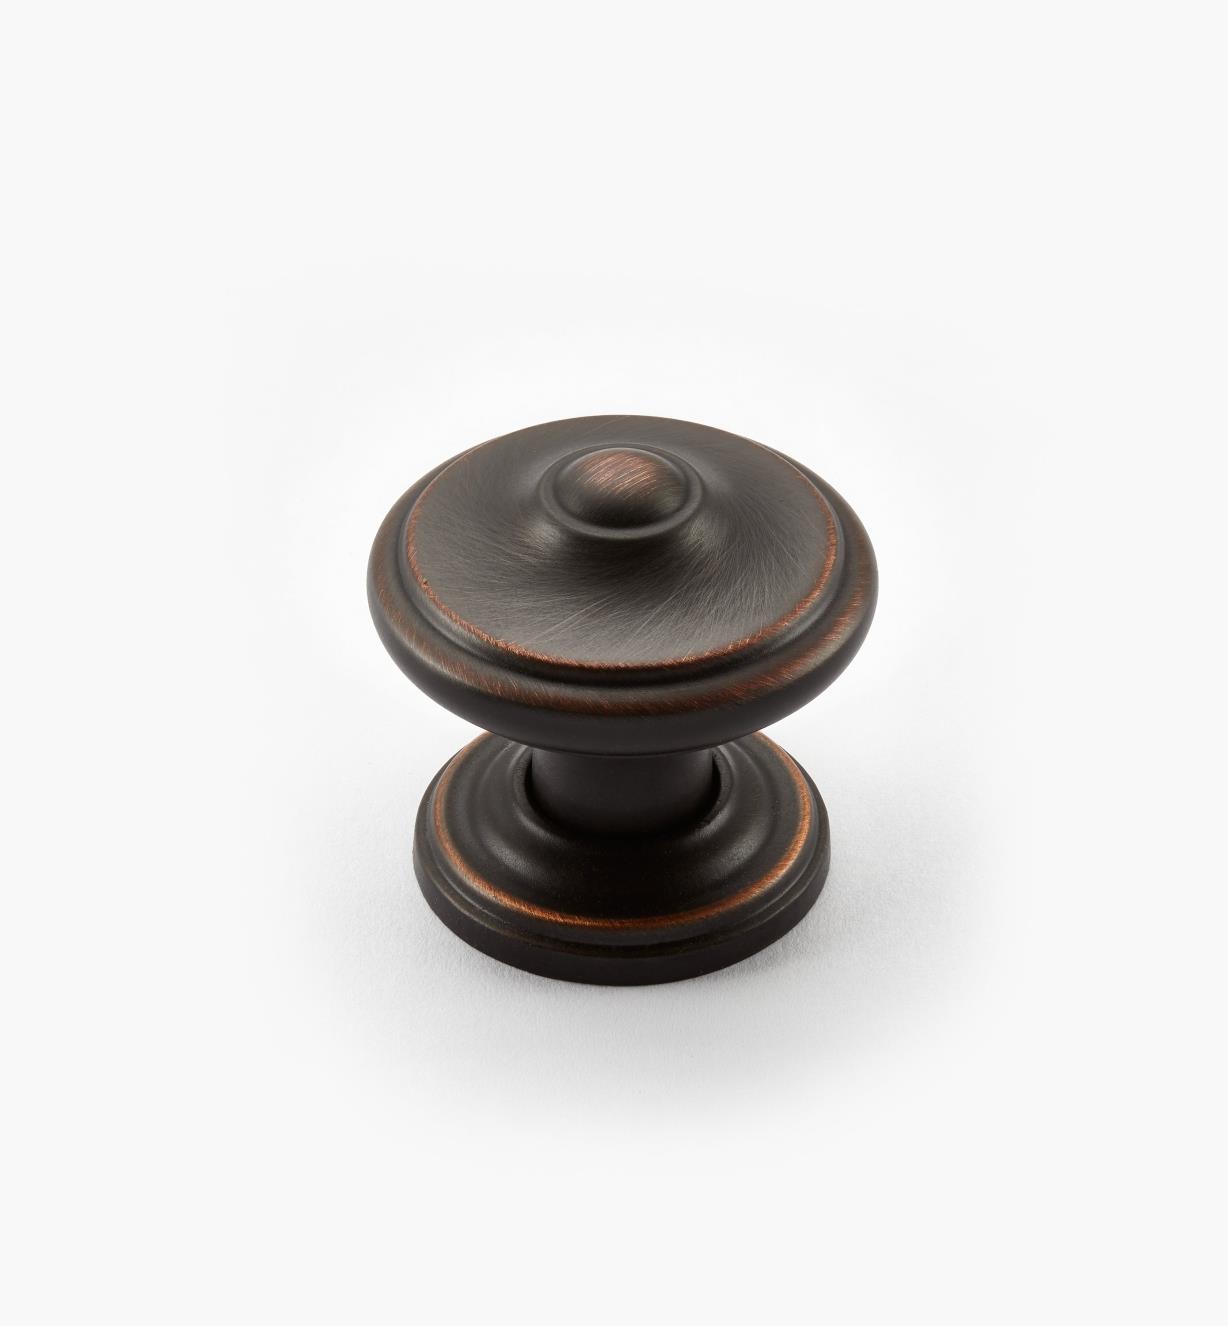 02A2241 - Bouton lyonnais Revitalize, 1 1/4 po, bronze huilé, l'unité